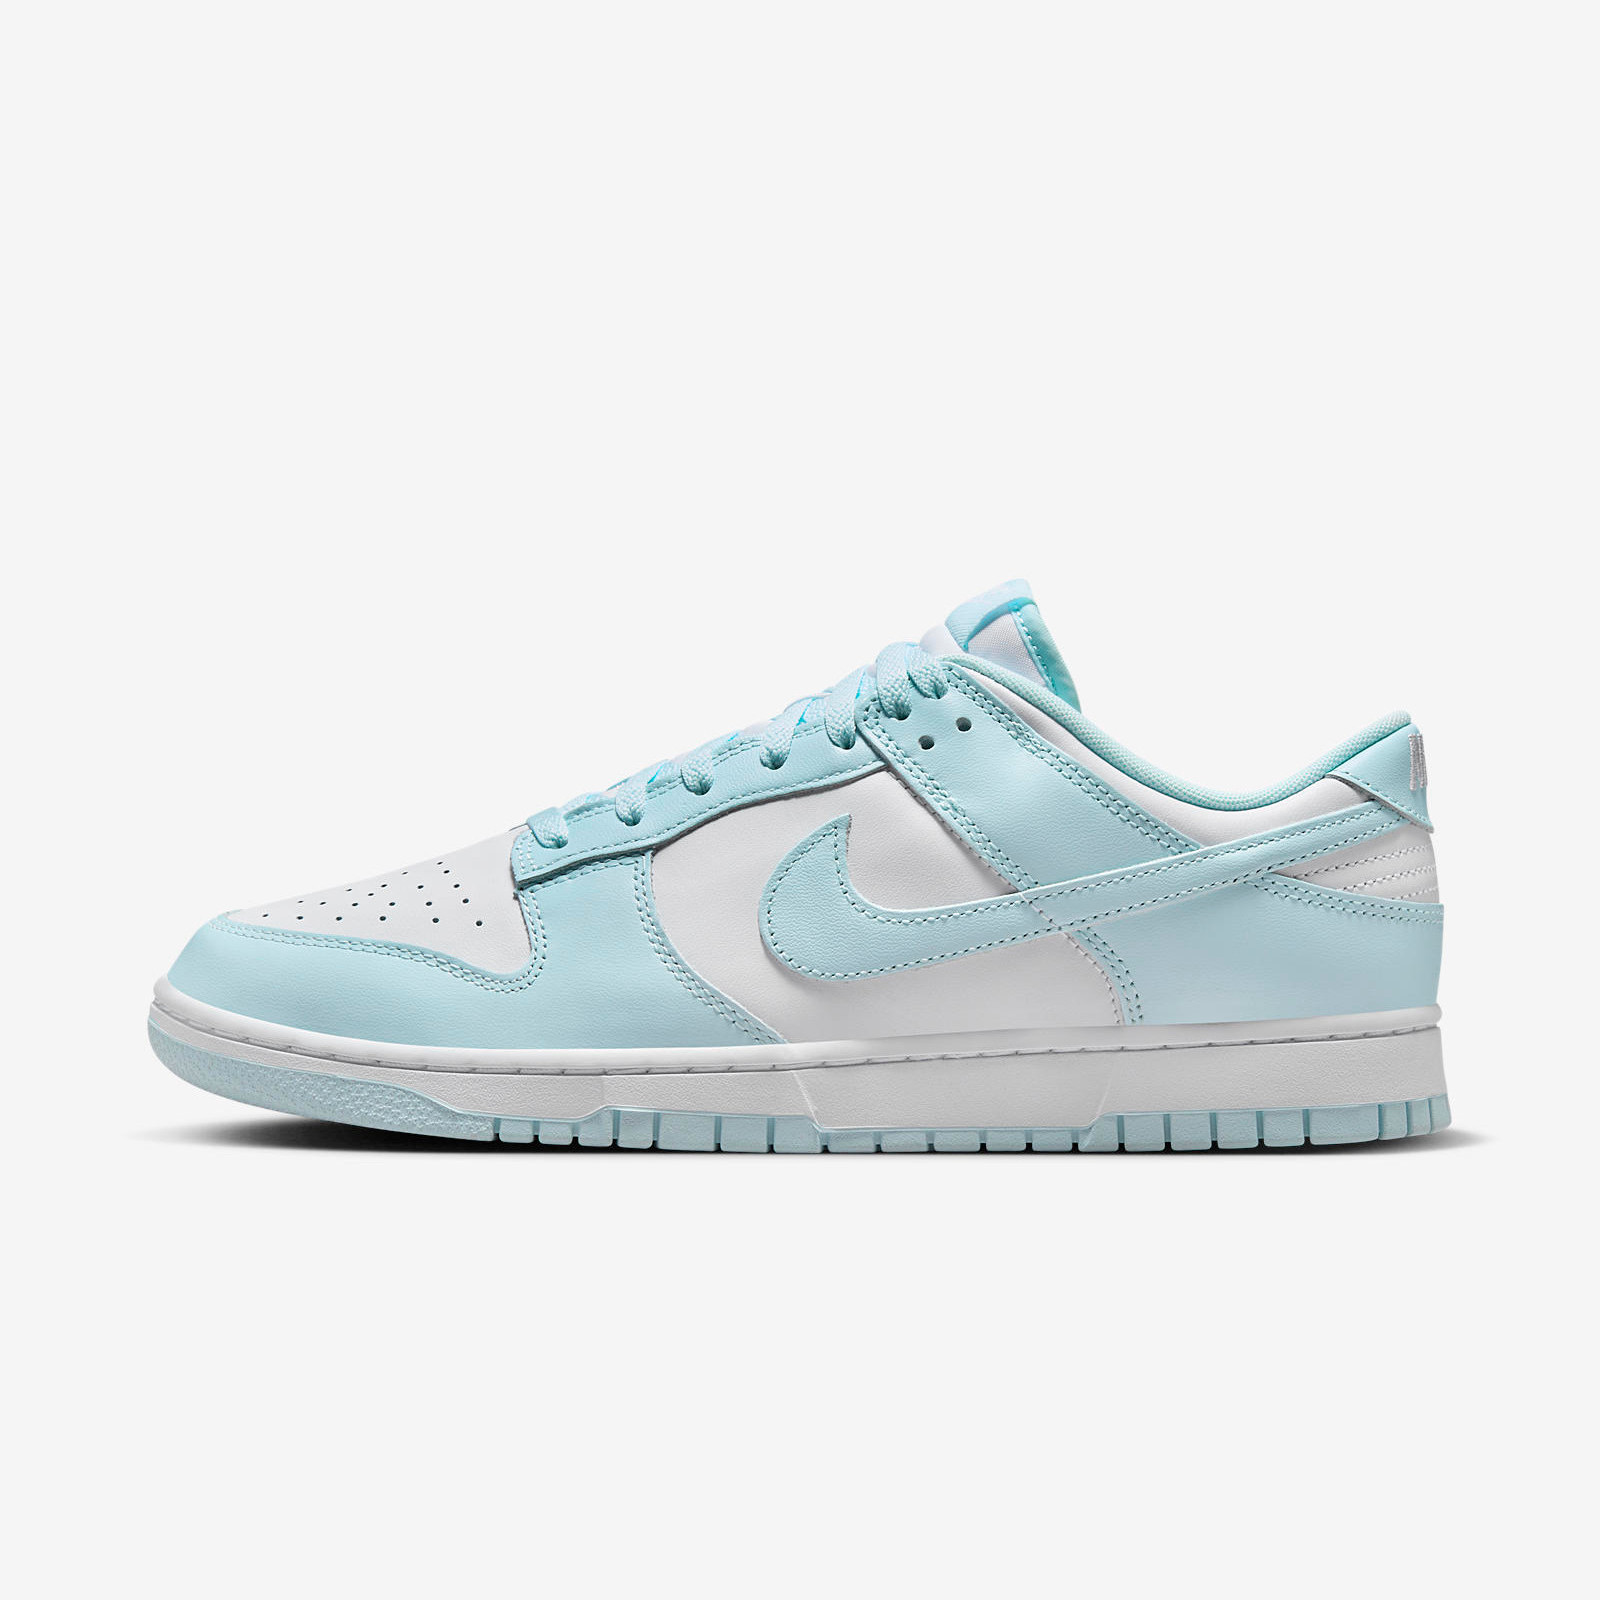 Nike Dunk Low
White / Glacier Blue